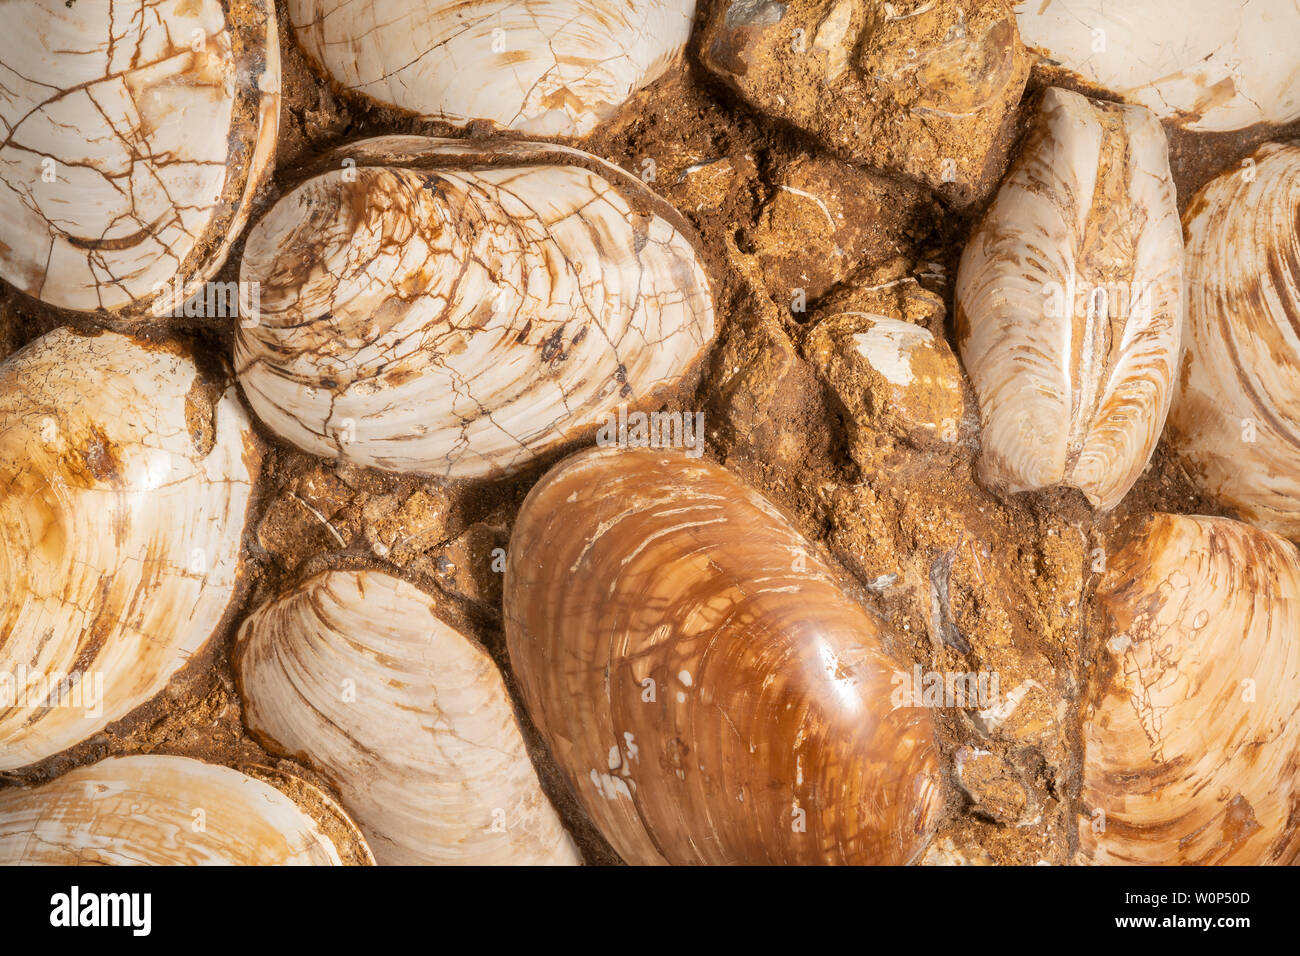 Versteinerte Muscheln, mit freundlicher Genehmigung von ZRS Fossilien, von Dominique Braud/Dembinsky Foto Assoc Stockfoto